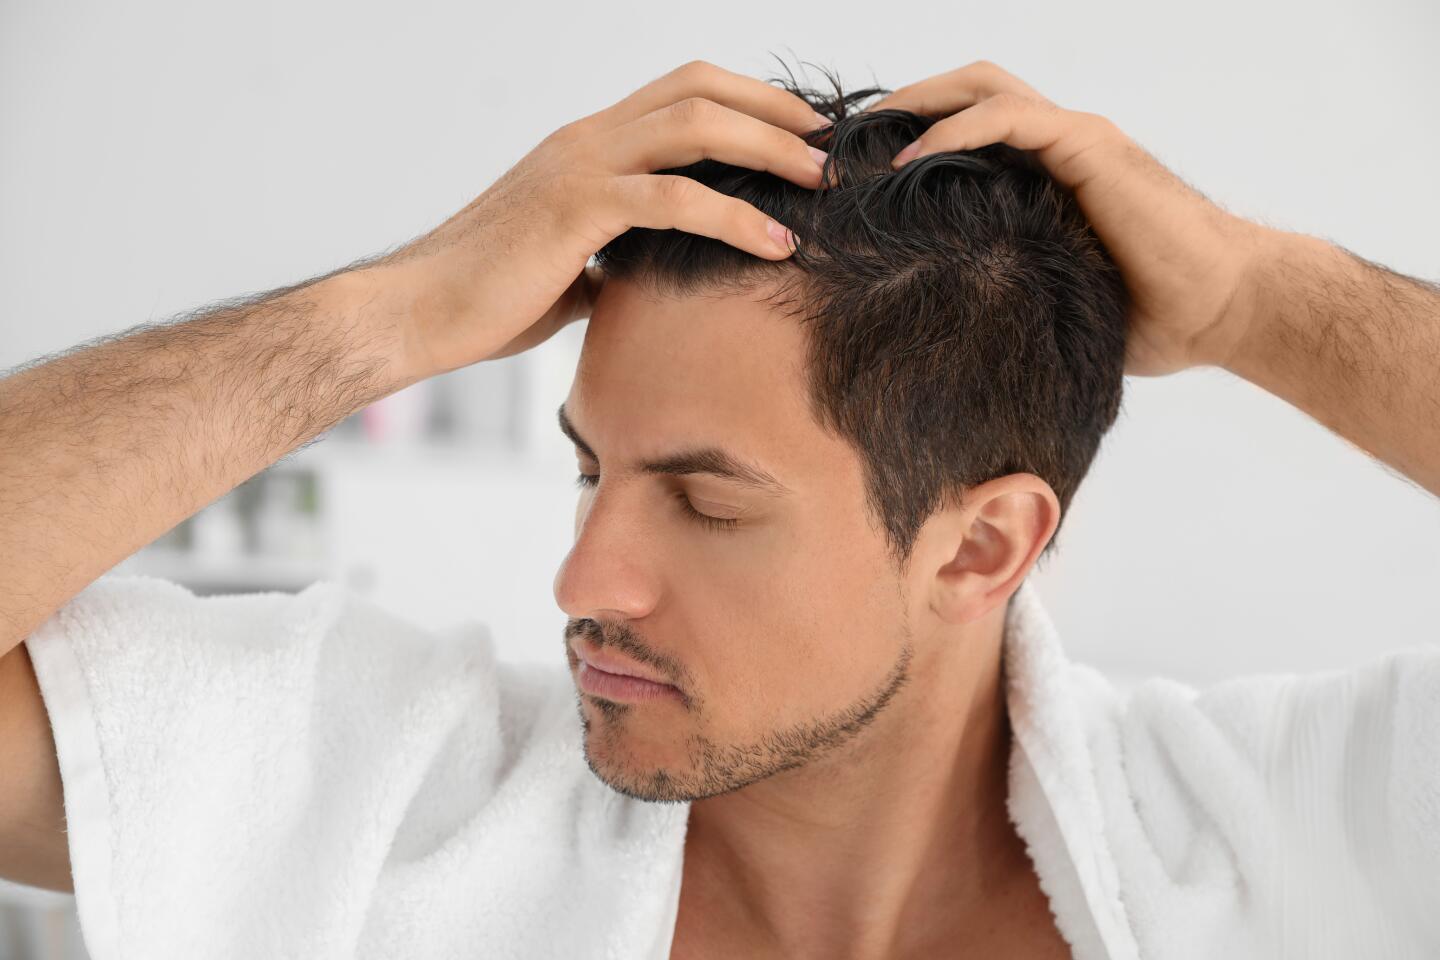 les-massages-ne-permettent-pas-de-lutter-efficacement-contre-la-chute-de-cheveux-ducray-upper-image